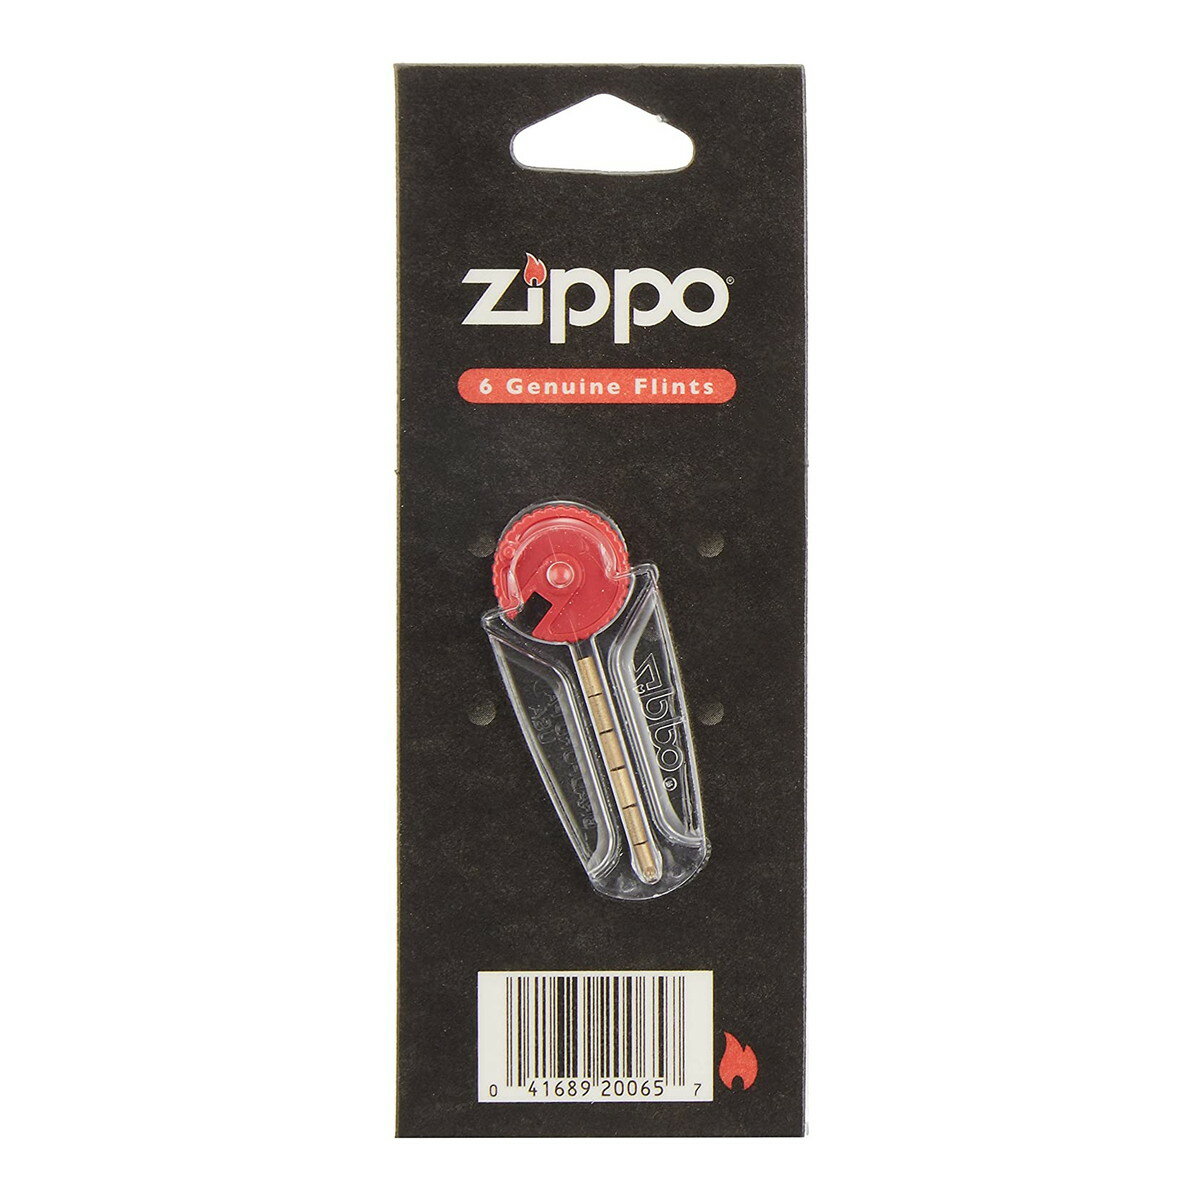 「ZIPPO ジッポーライター用 石 6個」は、ジッポーライター用の発火石です。使用方法フリントの交換方法●Zippo オイルライター(1)インサイド・ユニット底部のスプリングネジをコインやドライバーなどで回し、チューブからフリント・スプリ...